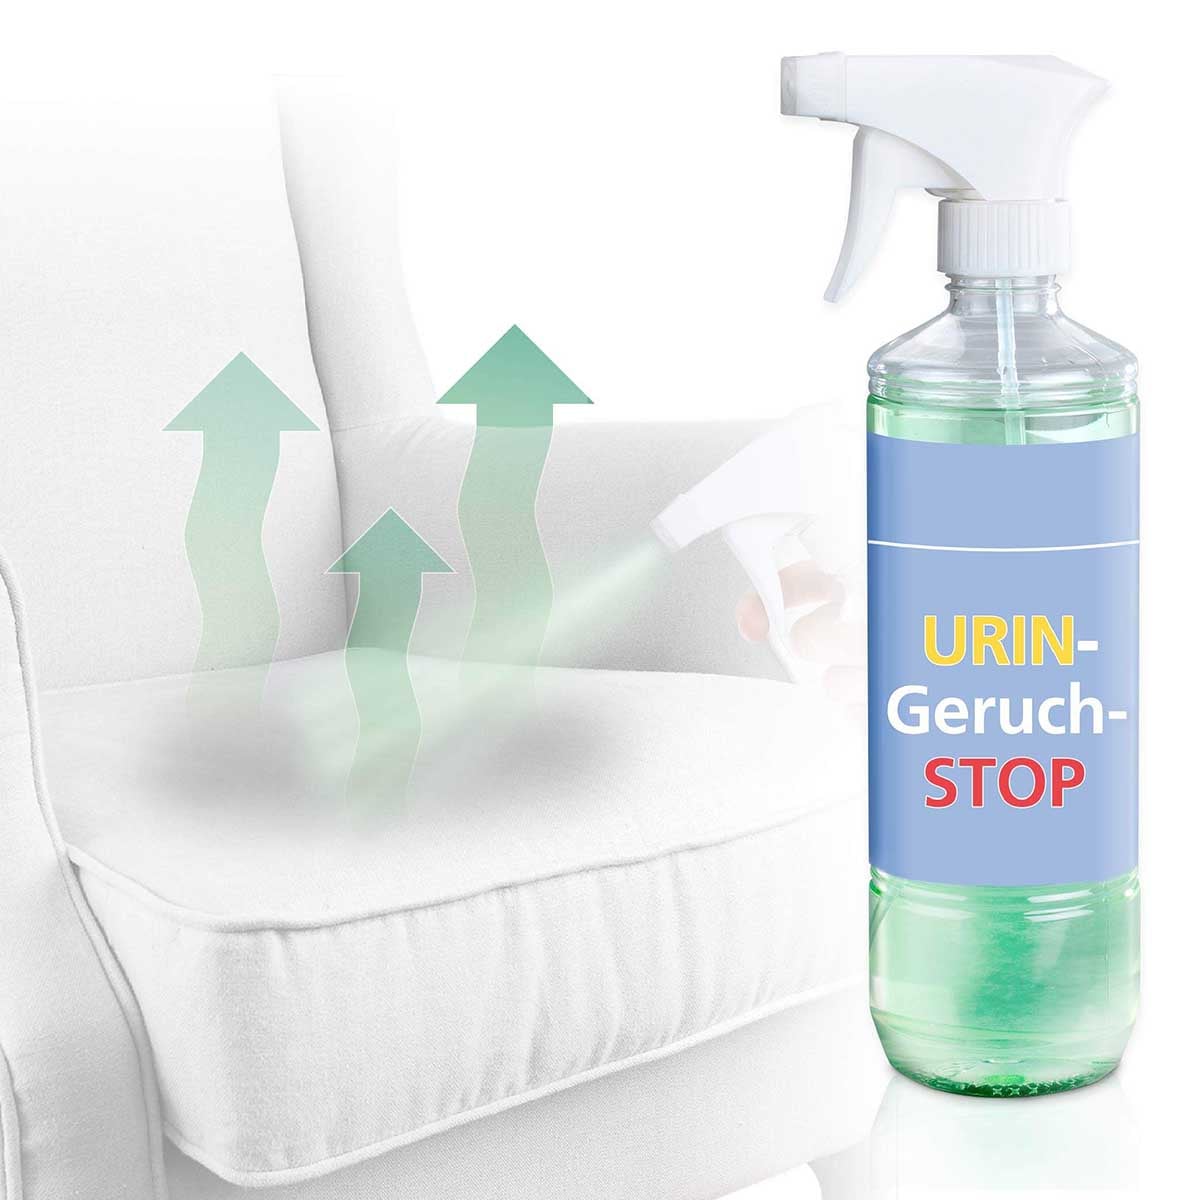 Urin-Geruch-Stop, 500 ml